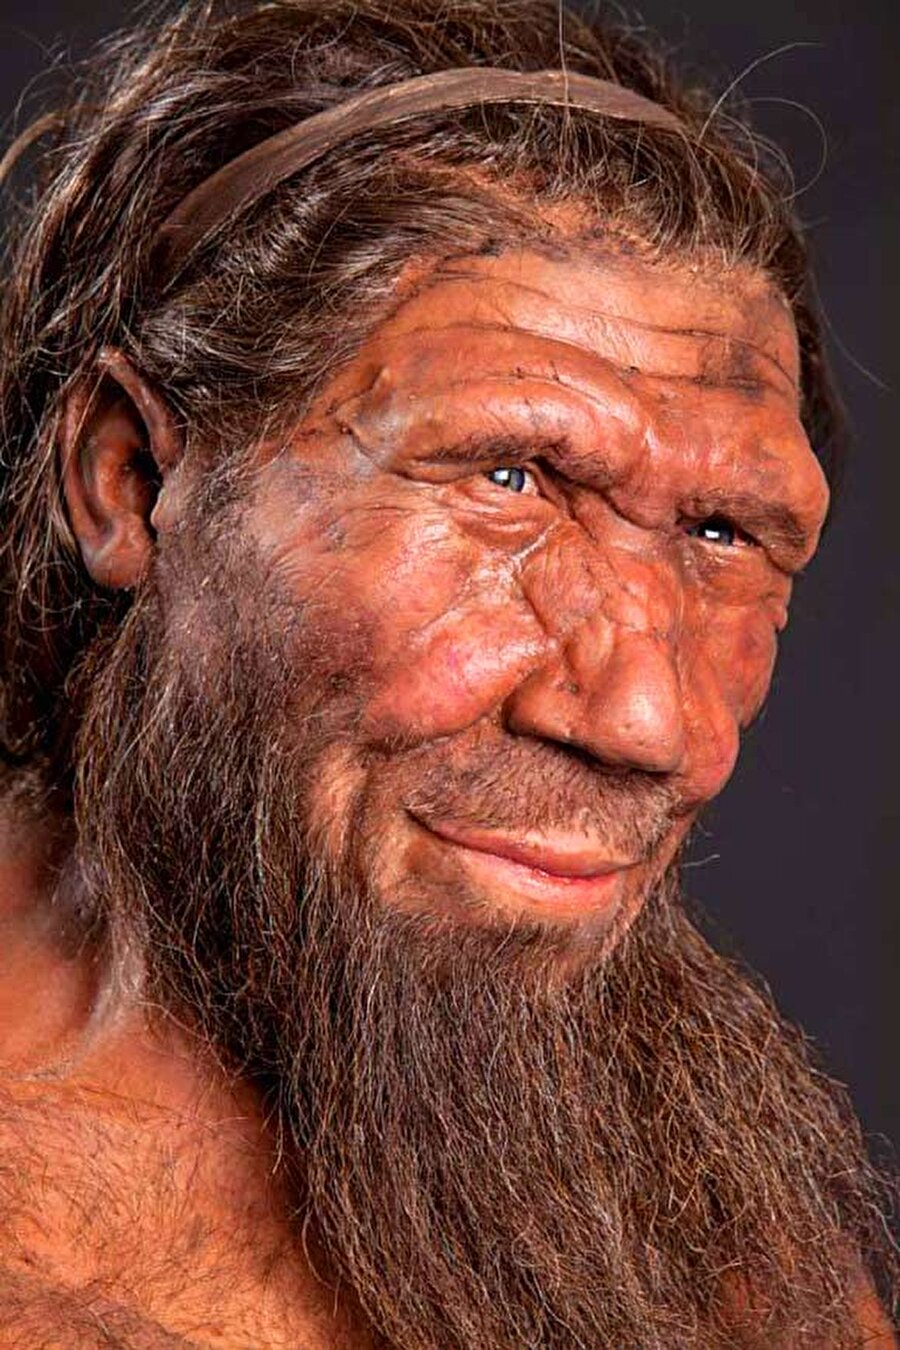 
                                    
                                    Peki Neandertaller nasıl ortadan kayboldu? Bununla ilgili birçok sebep ortaya atılsa da çok farklı birleşenlerin bu durumu ortaya çıkardığı ortadaydı. Modern insanın Neandertallerin yaşam alanlarını işgal etmesi hatta onları öldürmesi türün neslinin tükenmesine neden oldu. Bunun yanında Buzul çağı'nın sona ermesine adapte olamamaları, besin kaynaklarının değişmesi, avladıkları besinlerin azalması gibi birçok neden bu türün yok olmasına neden oldu. Bazı bilim insanlarının görüşüne göre ise Neandertallerin yok olmadığı, modern insanla çiftleşerek asimile oldukları yönündeydi. Anlaşılan bilim adına bu tartışma ve araştırma yeni bulgulara erişilene kadar devam edecek.
                                
                                